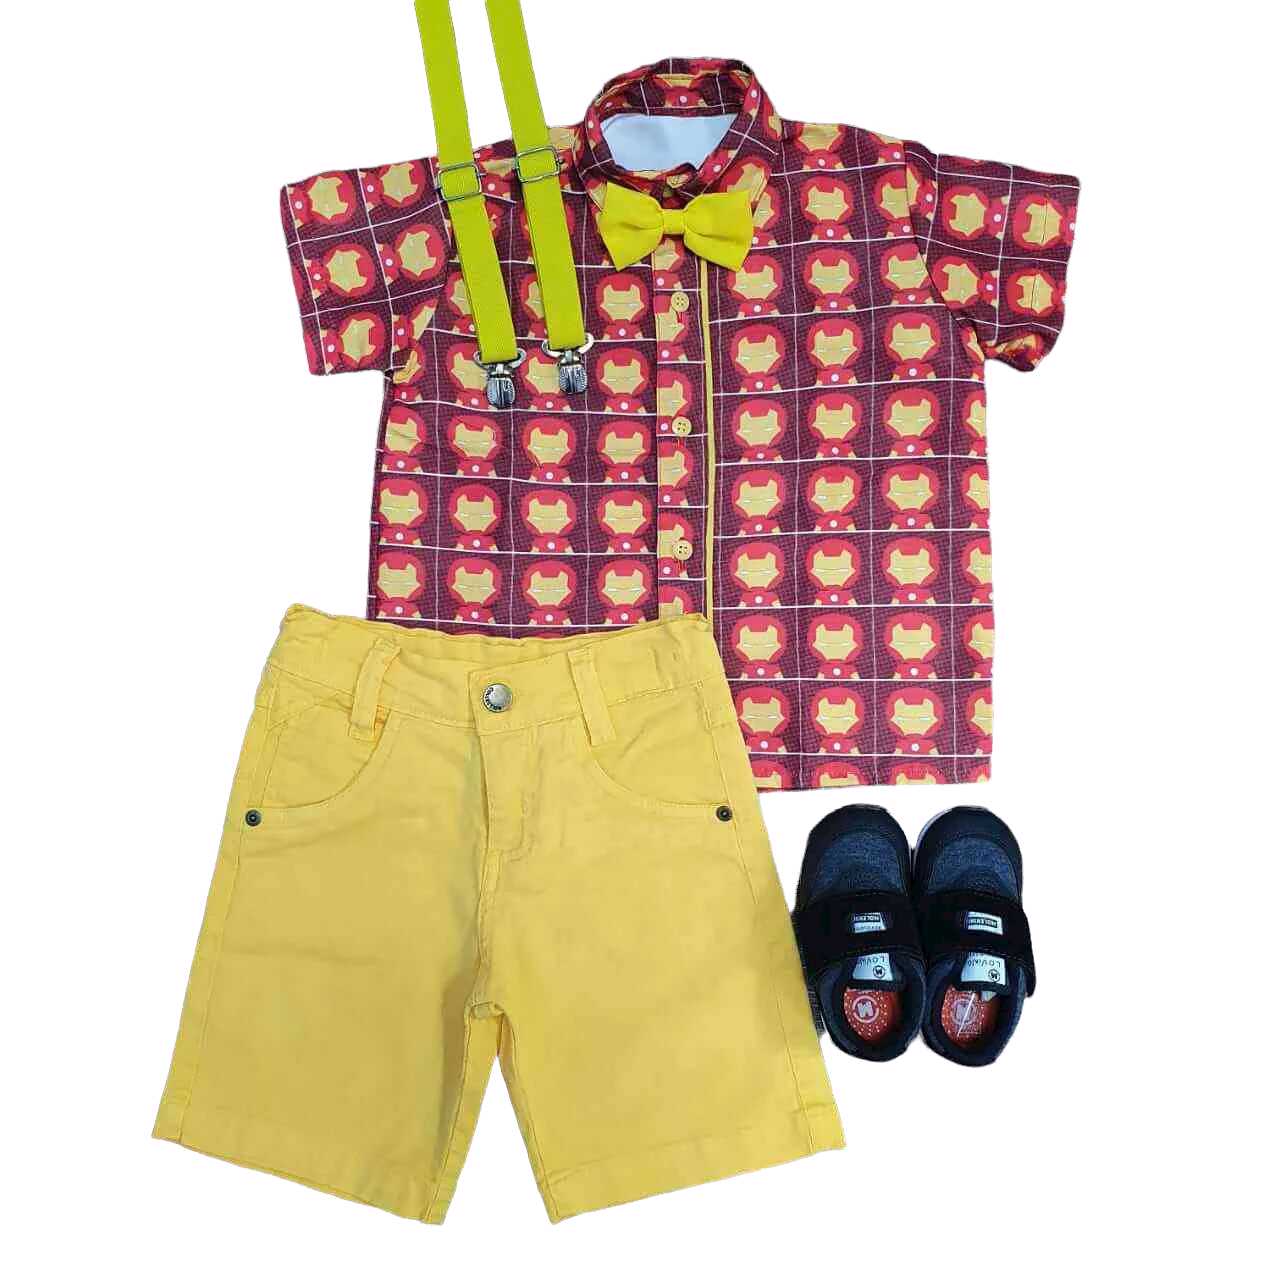 Bermuda Amarela com Camisa Homem de Ferro Infantil